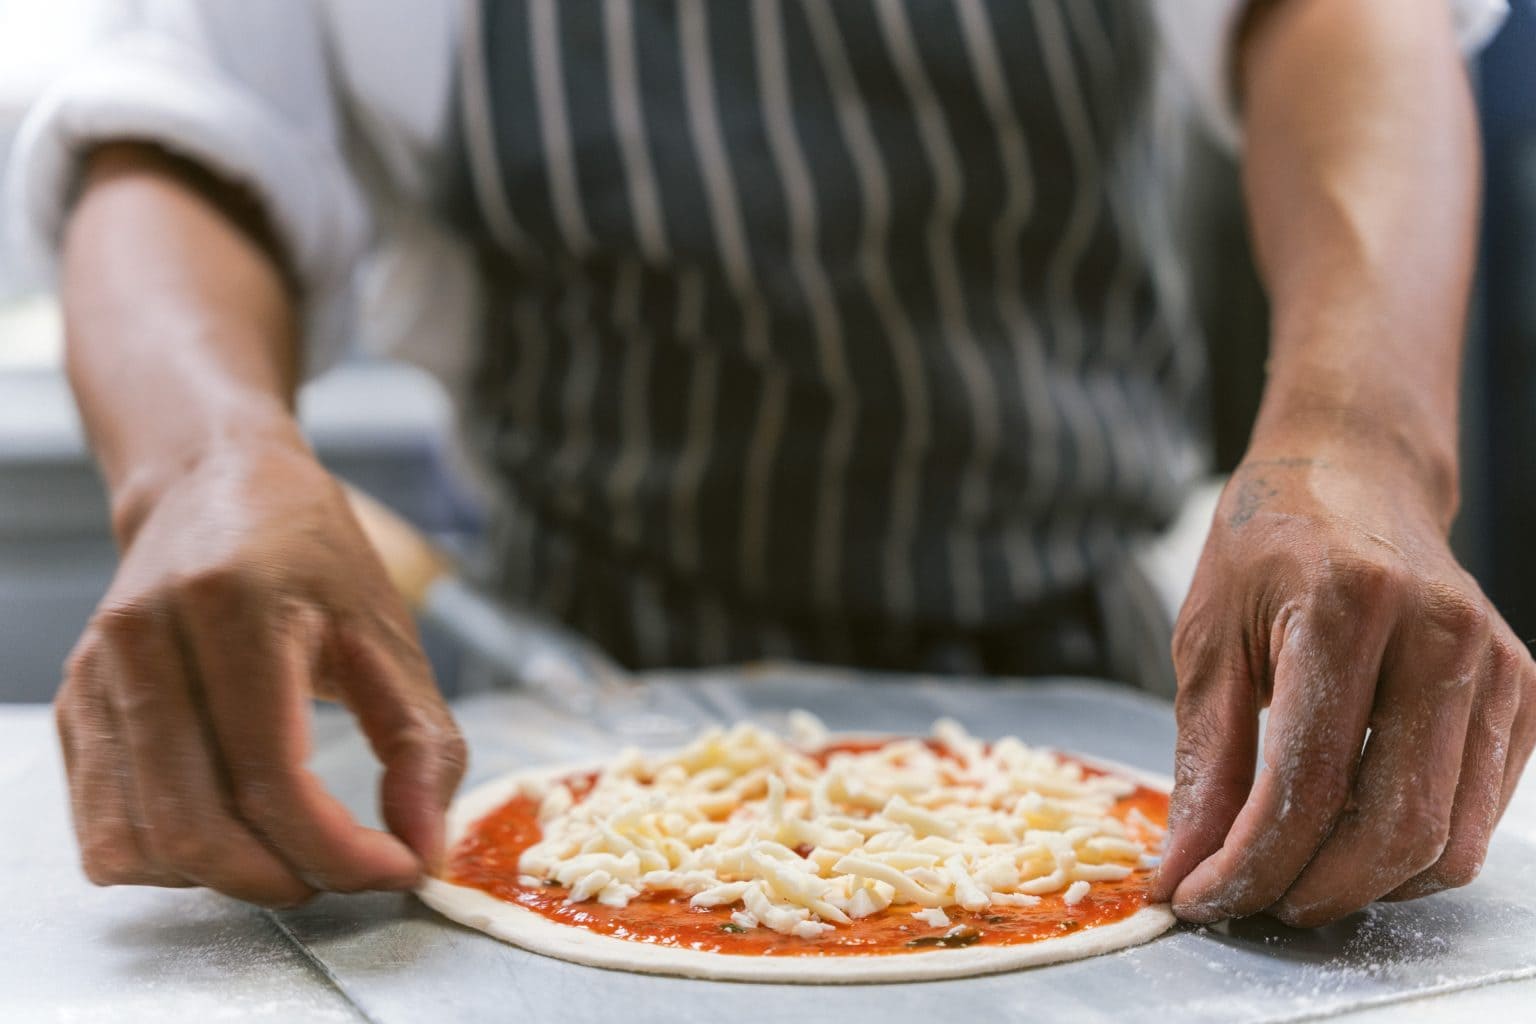 DSC04107 - 2022 - Quod Restaurant & Bar - Oxford - High Res - Food Pizzetta Preparation Kitchen Team Collective - Web Hero